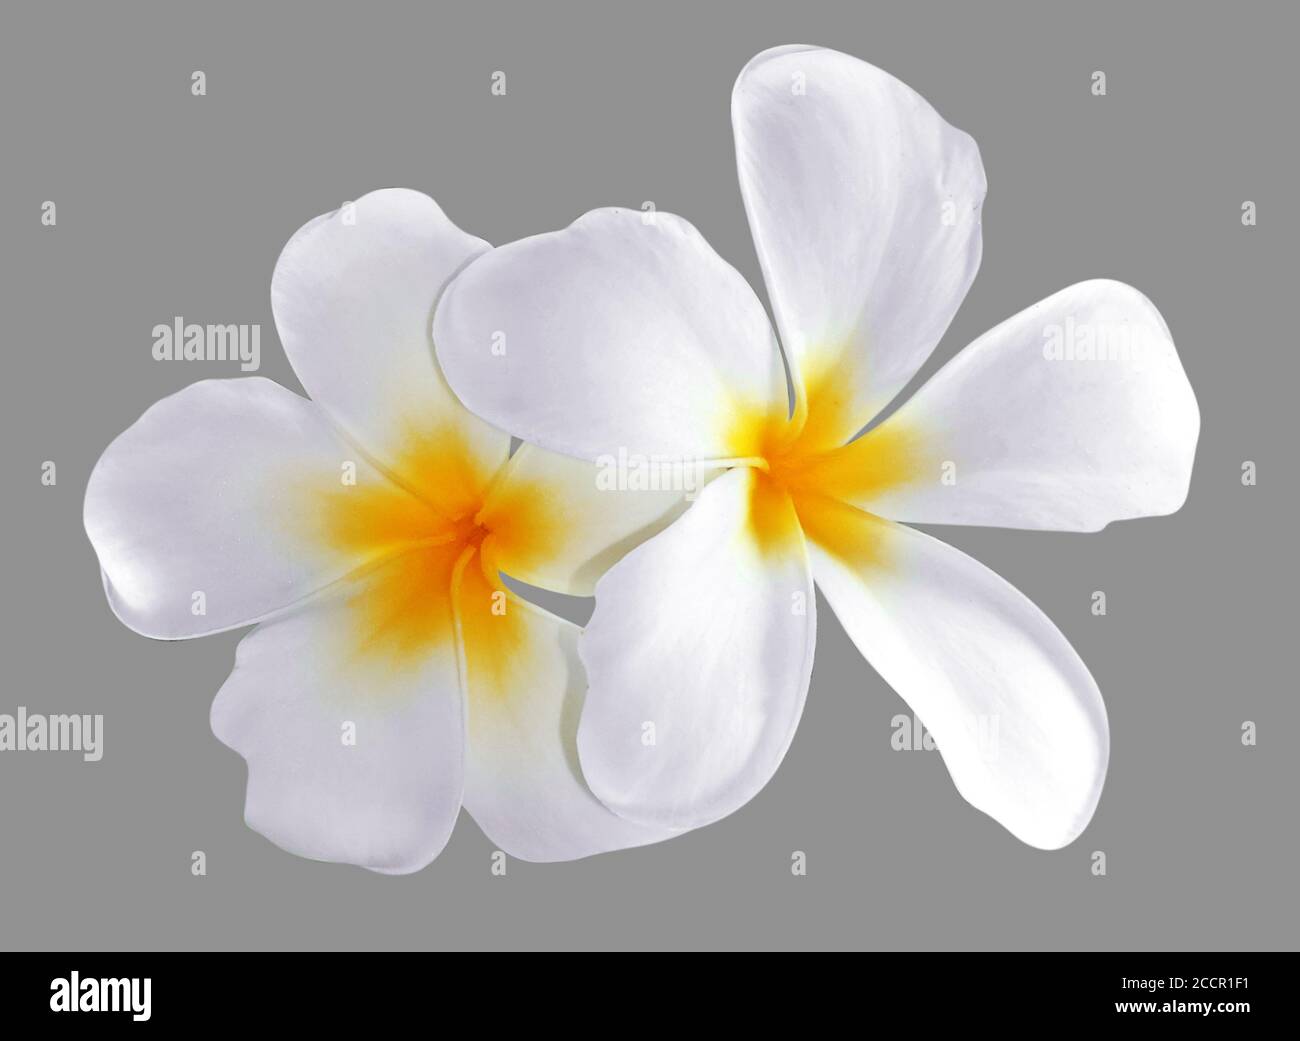 Frangipani, Plumeria flower isolated on white background Stock Photo